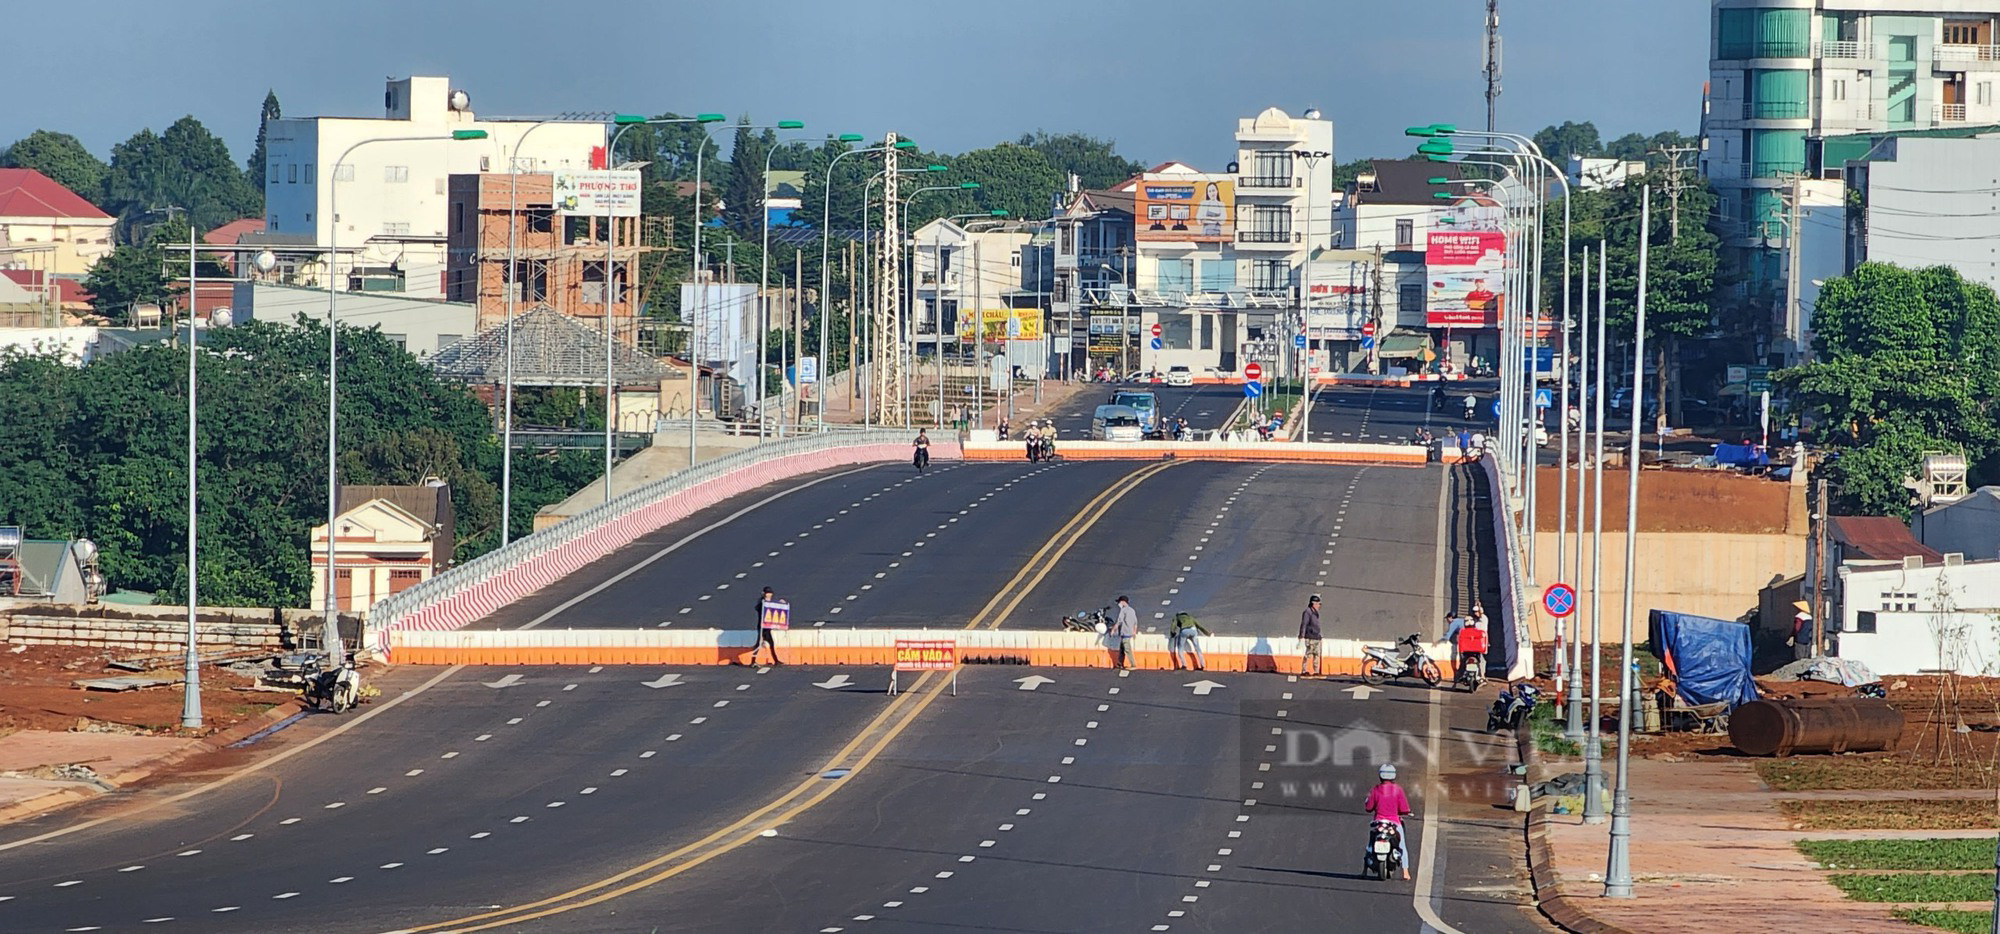 Rào chắn Đại lộ nghìn tỷ ở Đắk Lắk sau nhiều vụ tai nạn chết người - Ảnh 1.